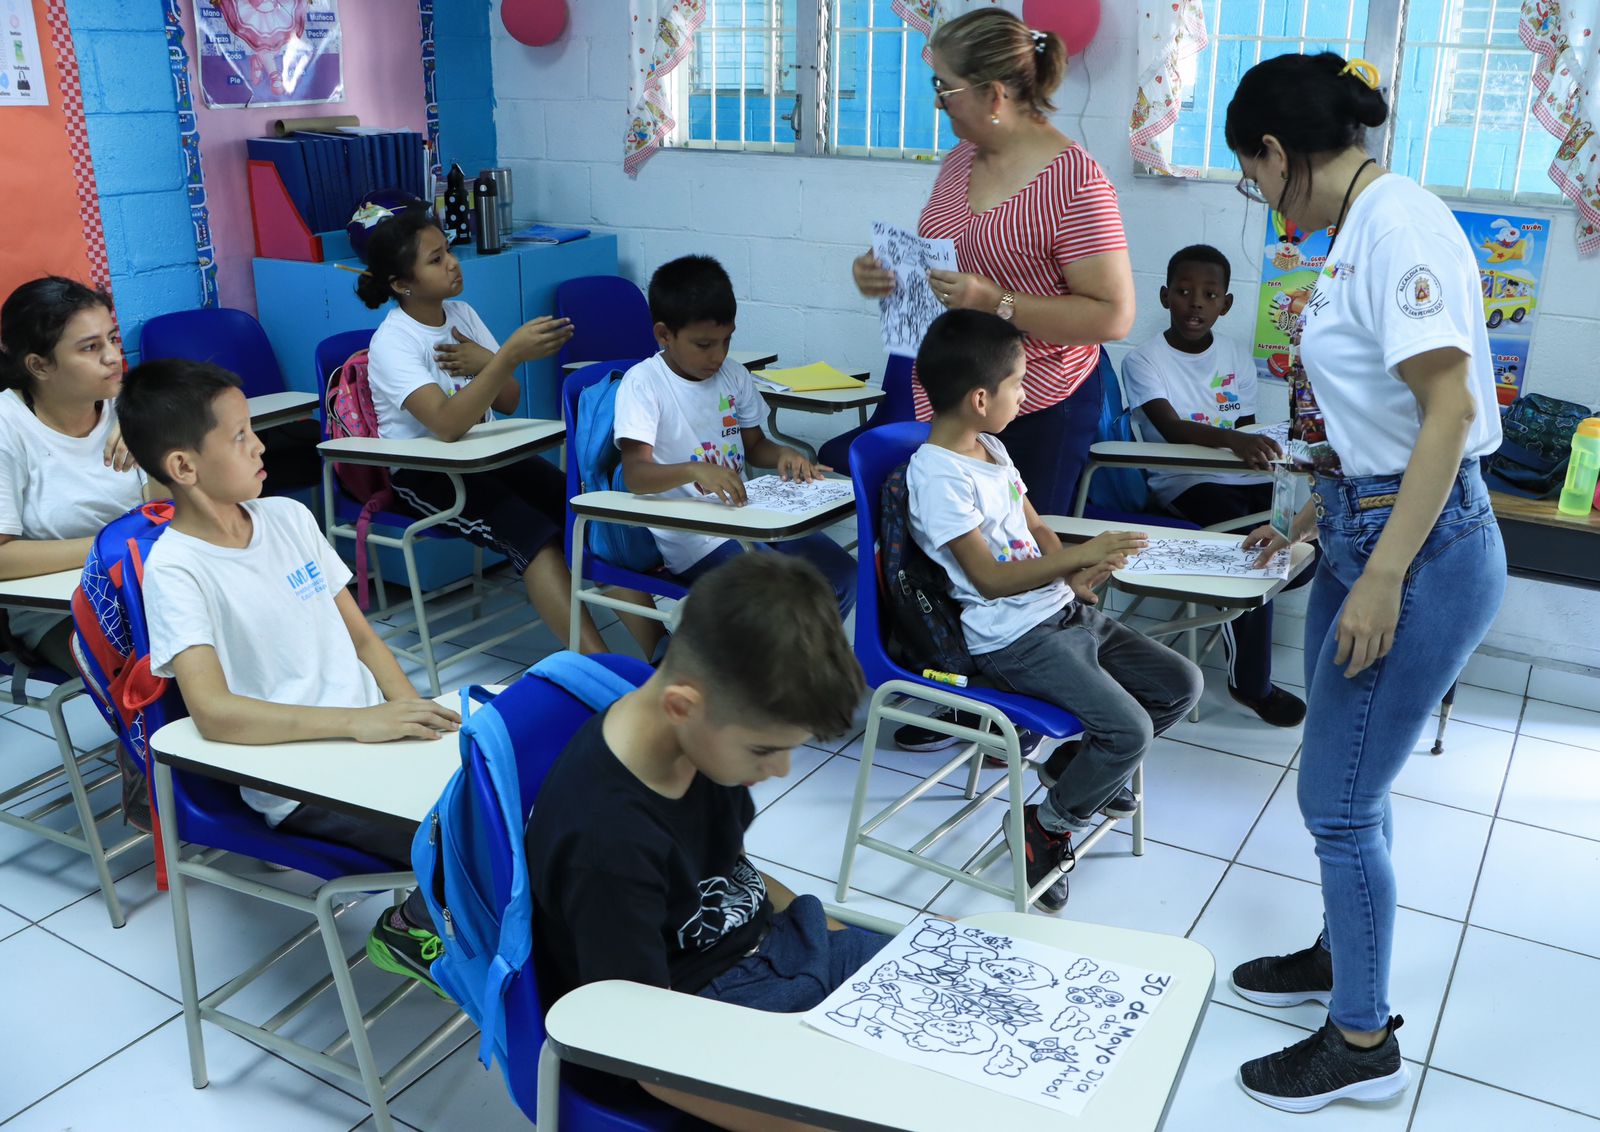 Alcaldia de La Ceiba proveera de albergues para victimas de trata de personas